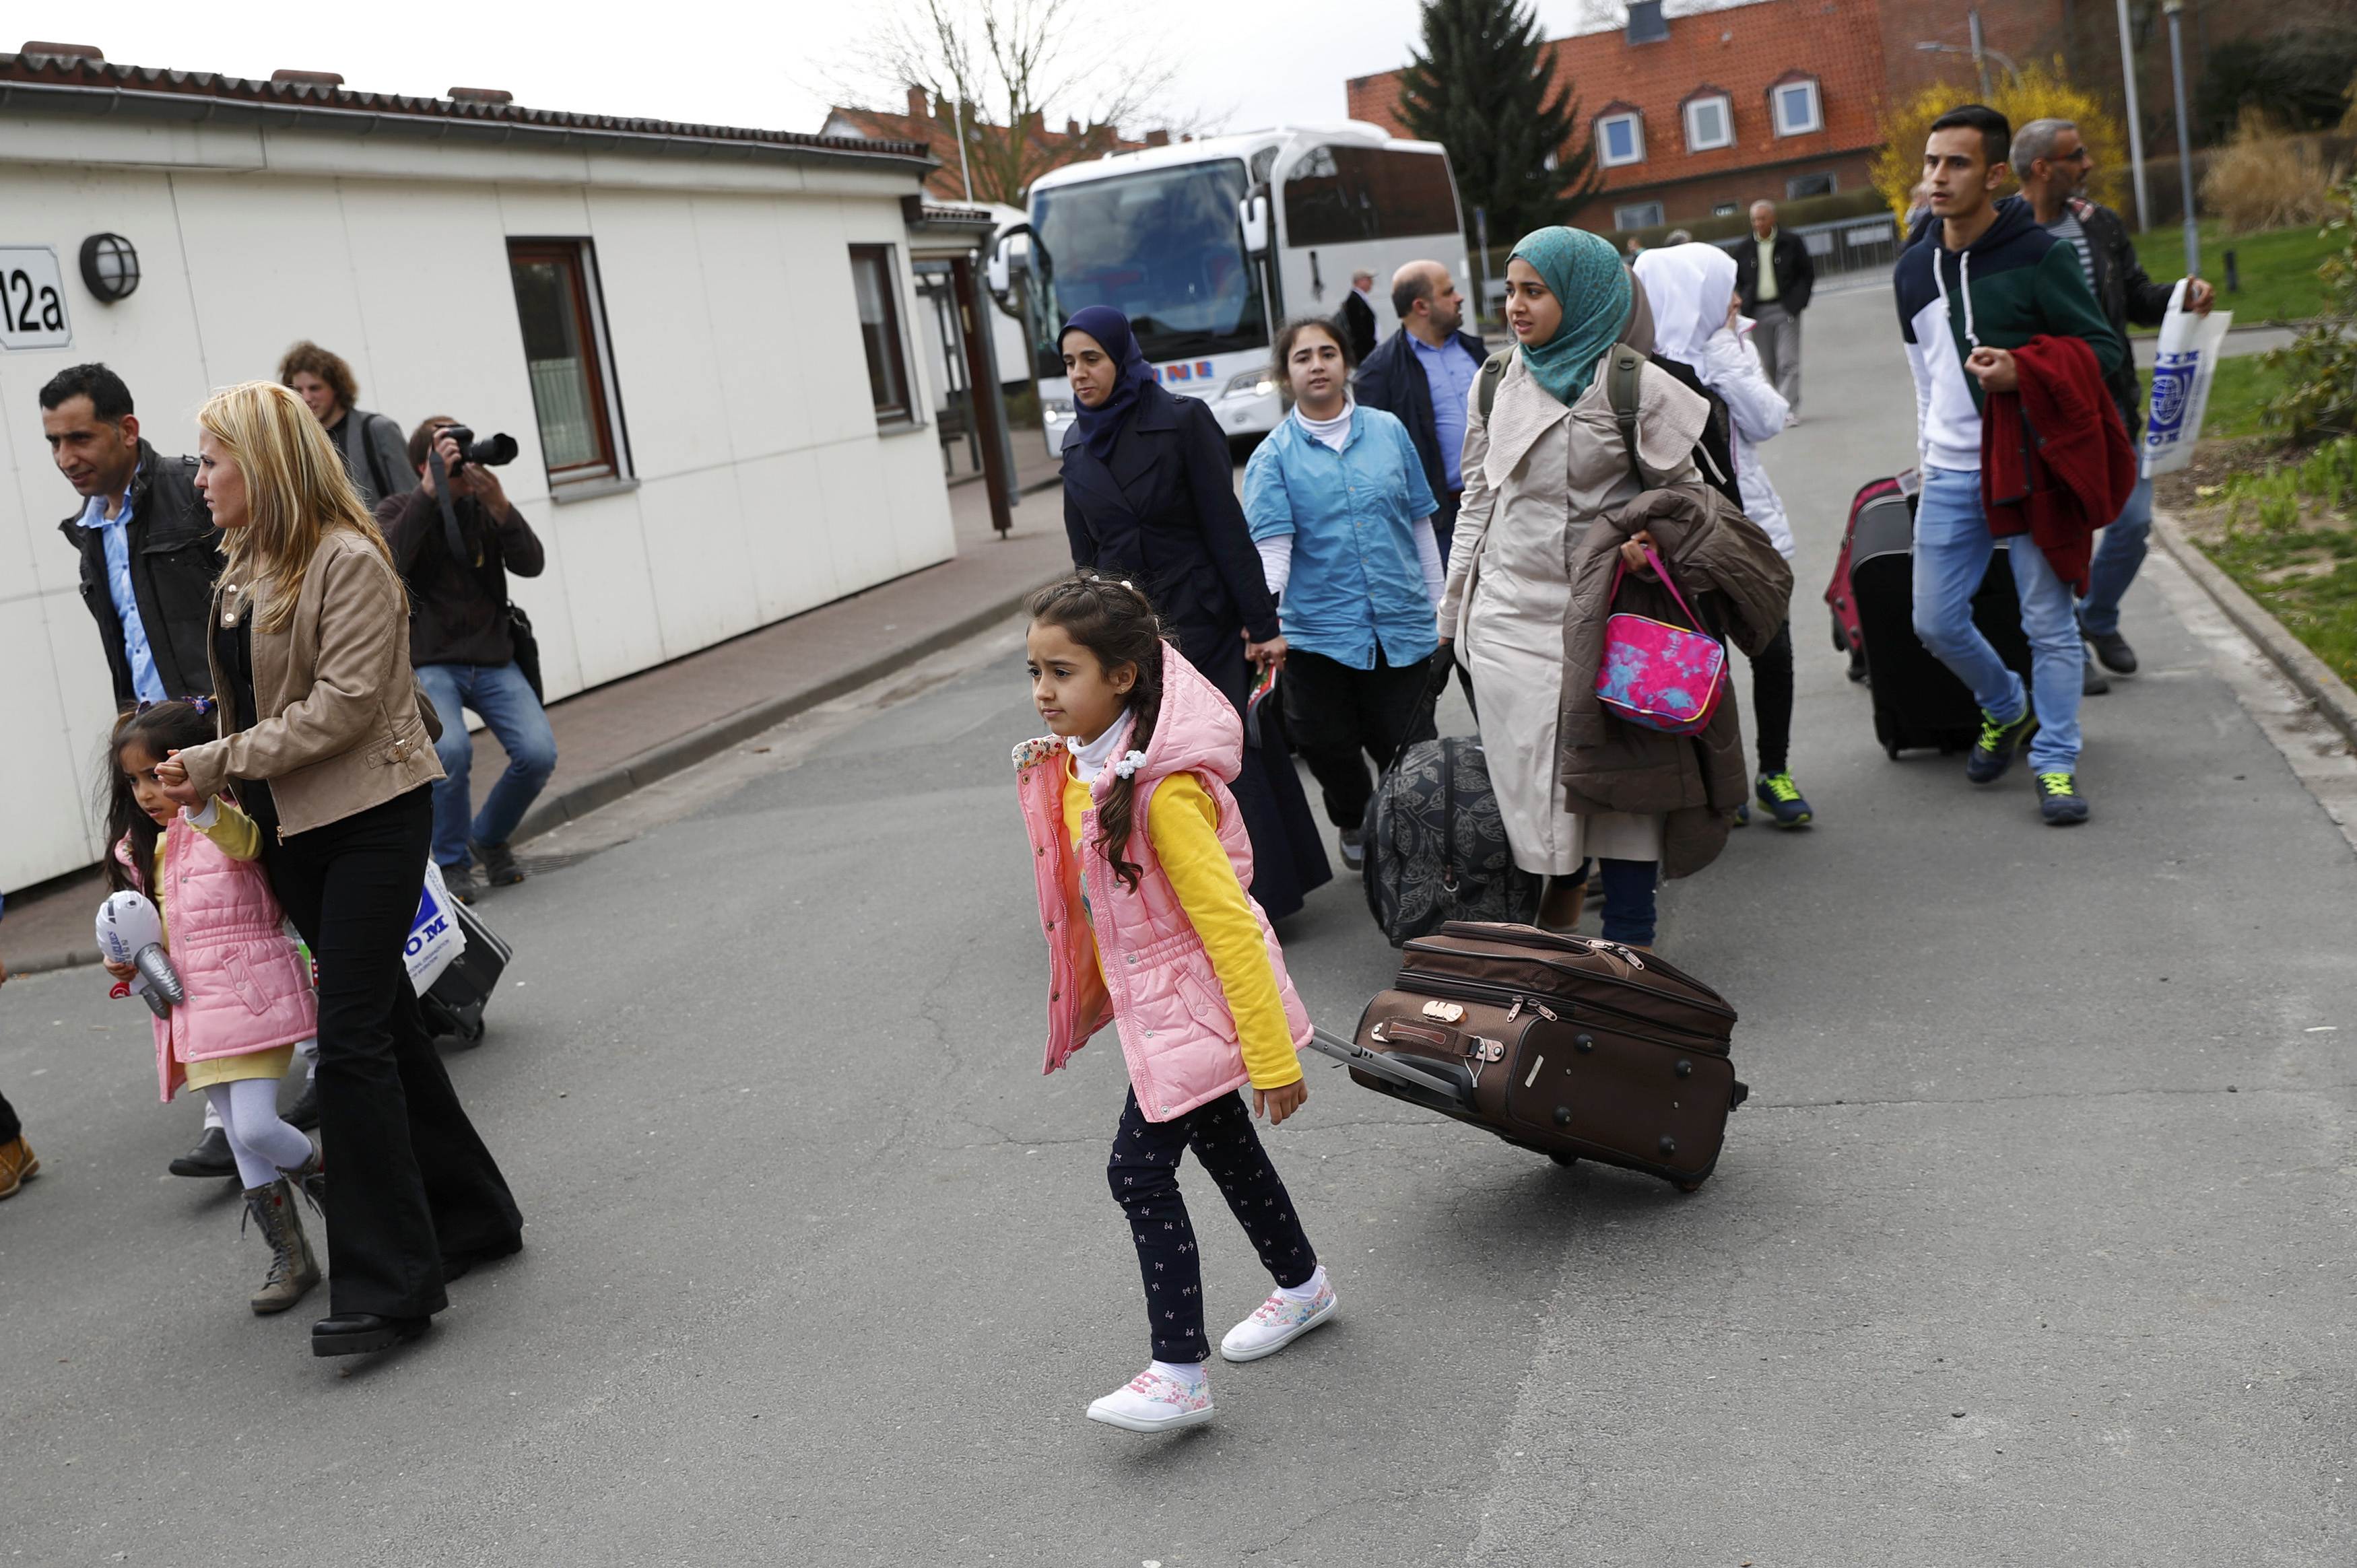 La organización ha brindado asilo a 330 mil personas que han viajado hasta Europa en busca de refugio